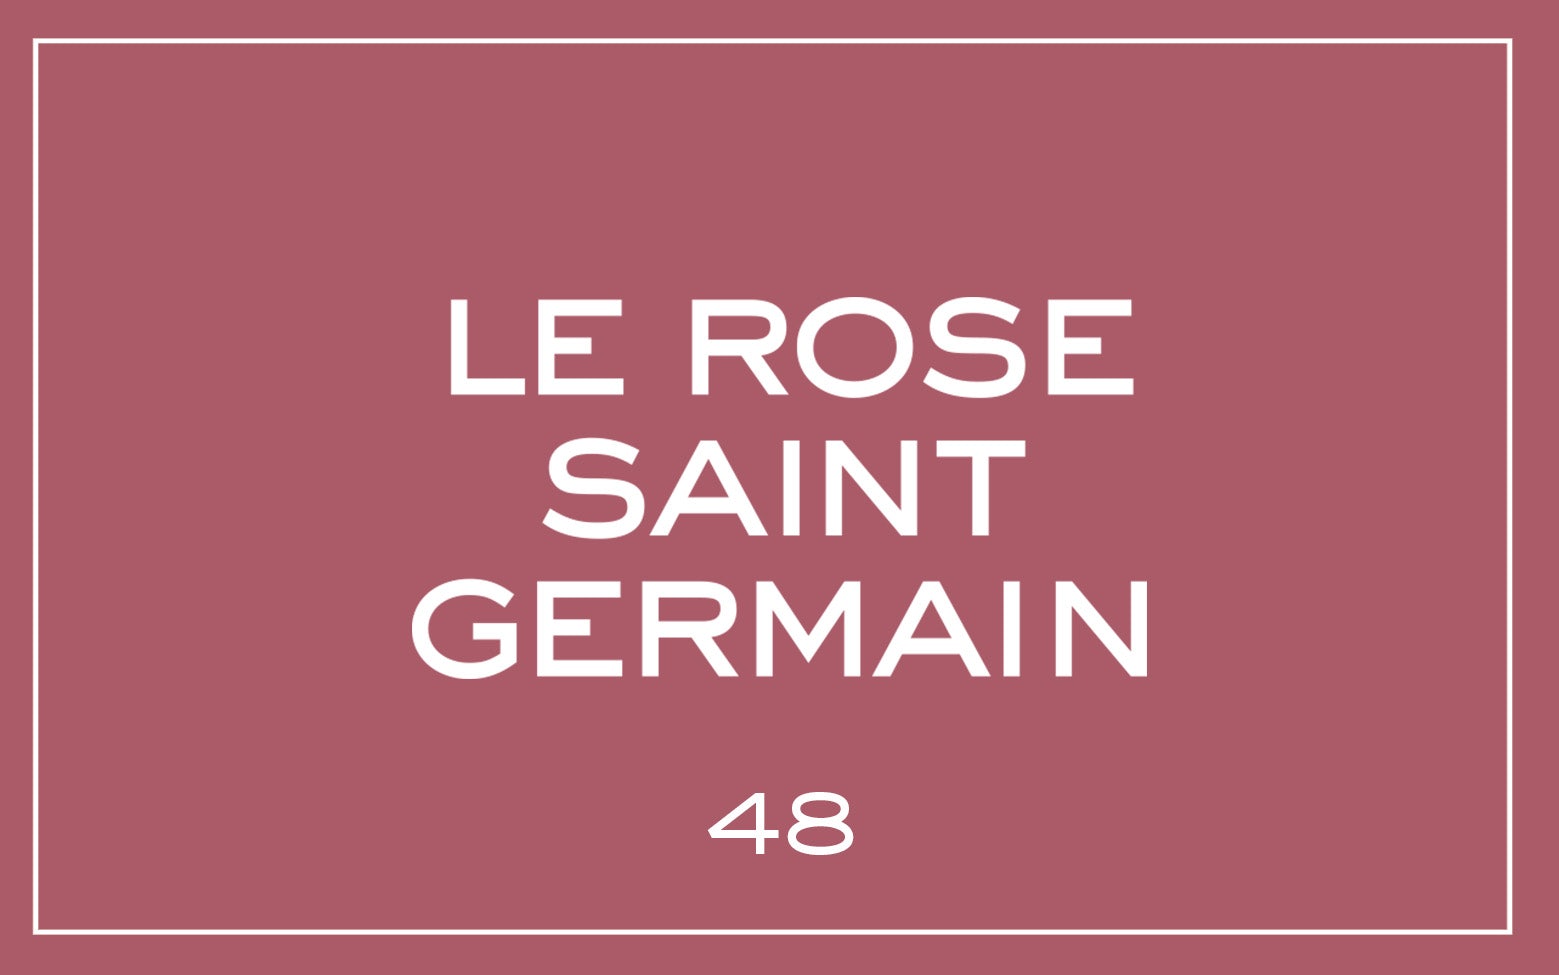 La bouche rouge Le Rose Saint Germain lipstick swatch with text